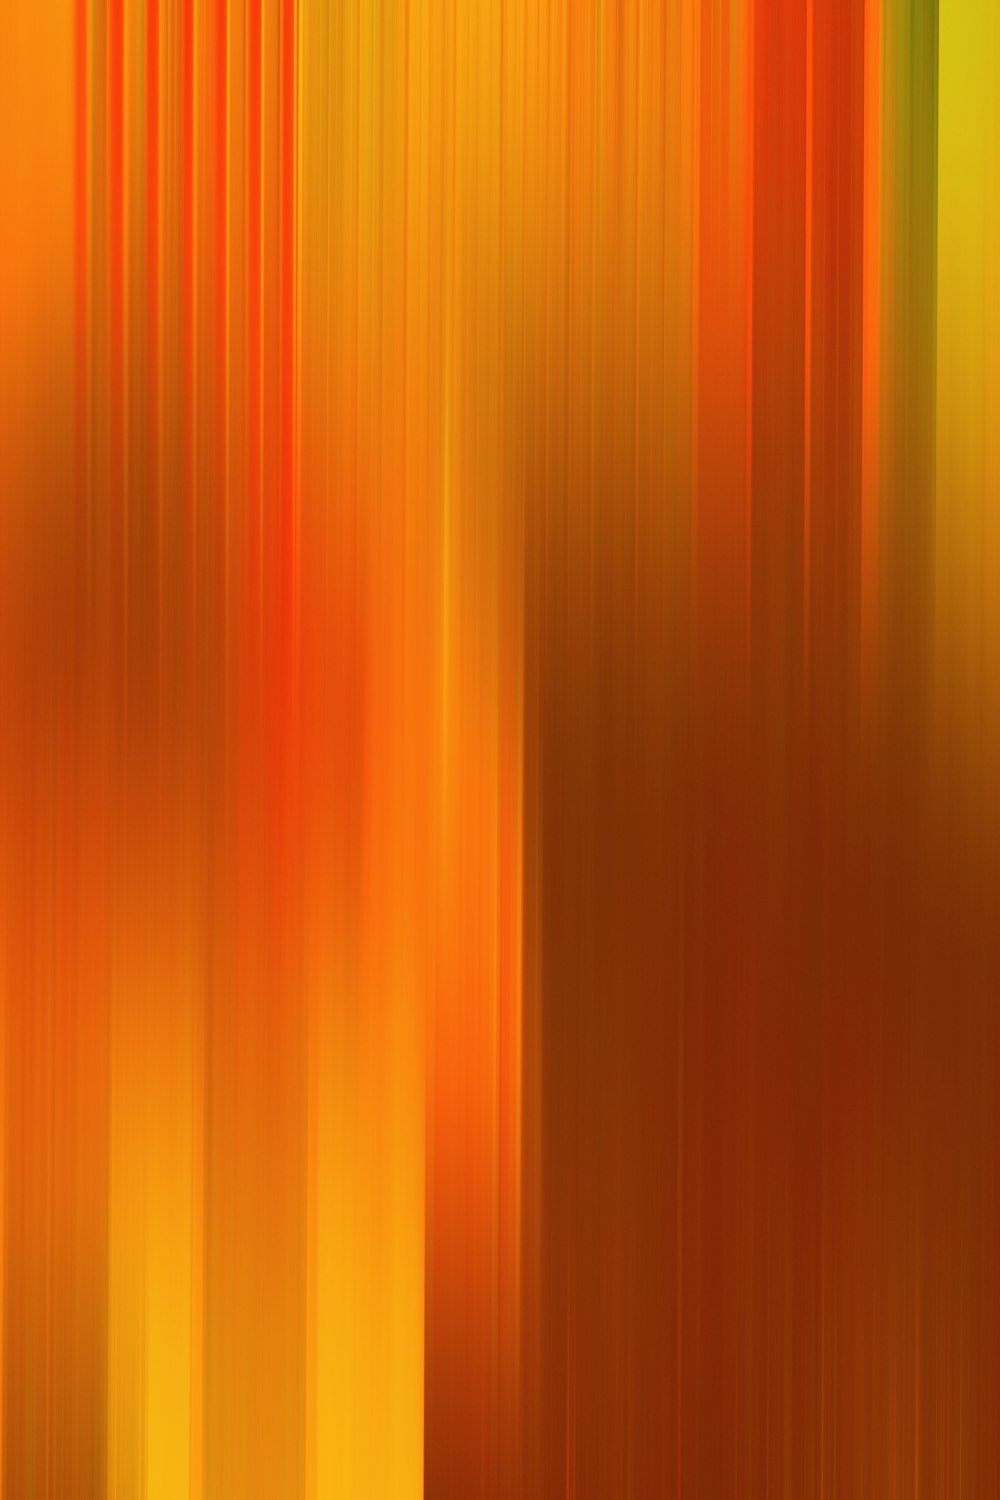 Ein verschwommenes Bild aus orangefarbenen und gelben Streifen